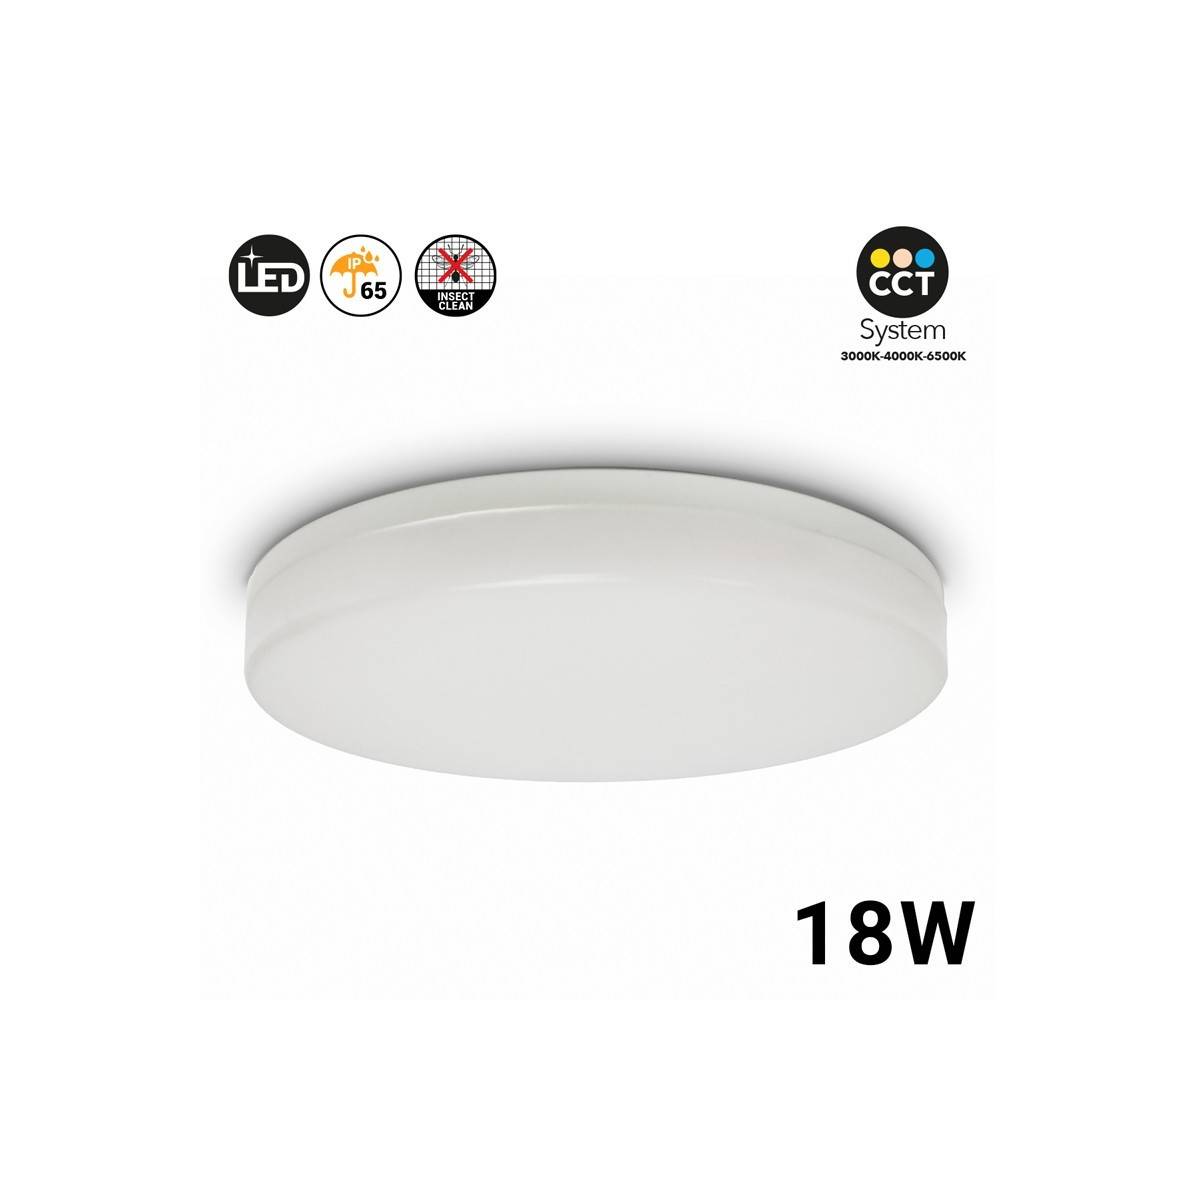 Plafón LED CCT de superfície circular de 2040LM 18W IP65